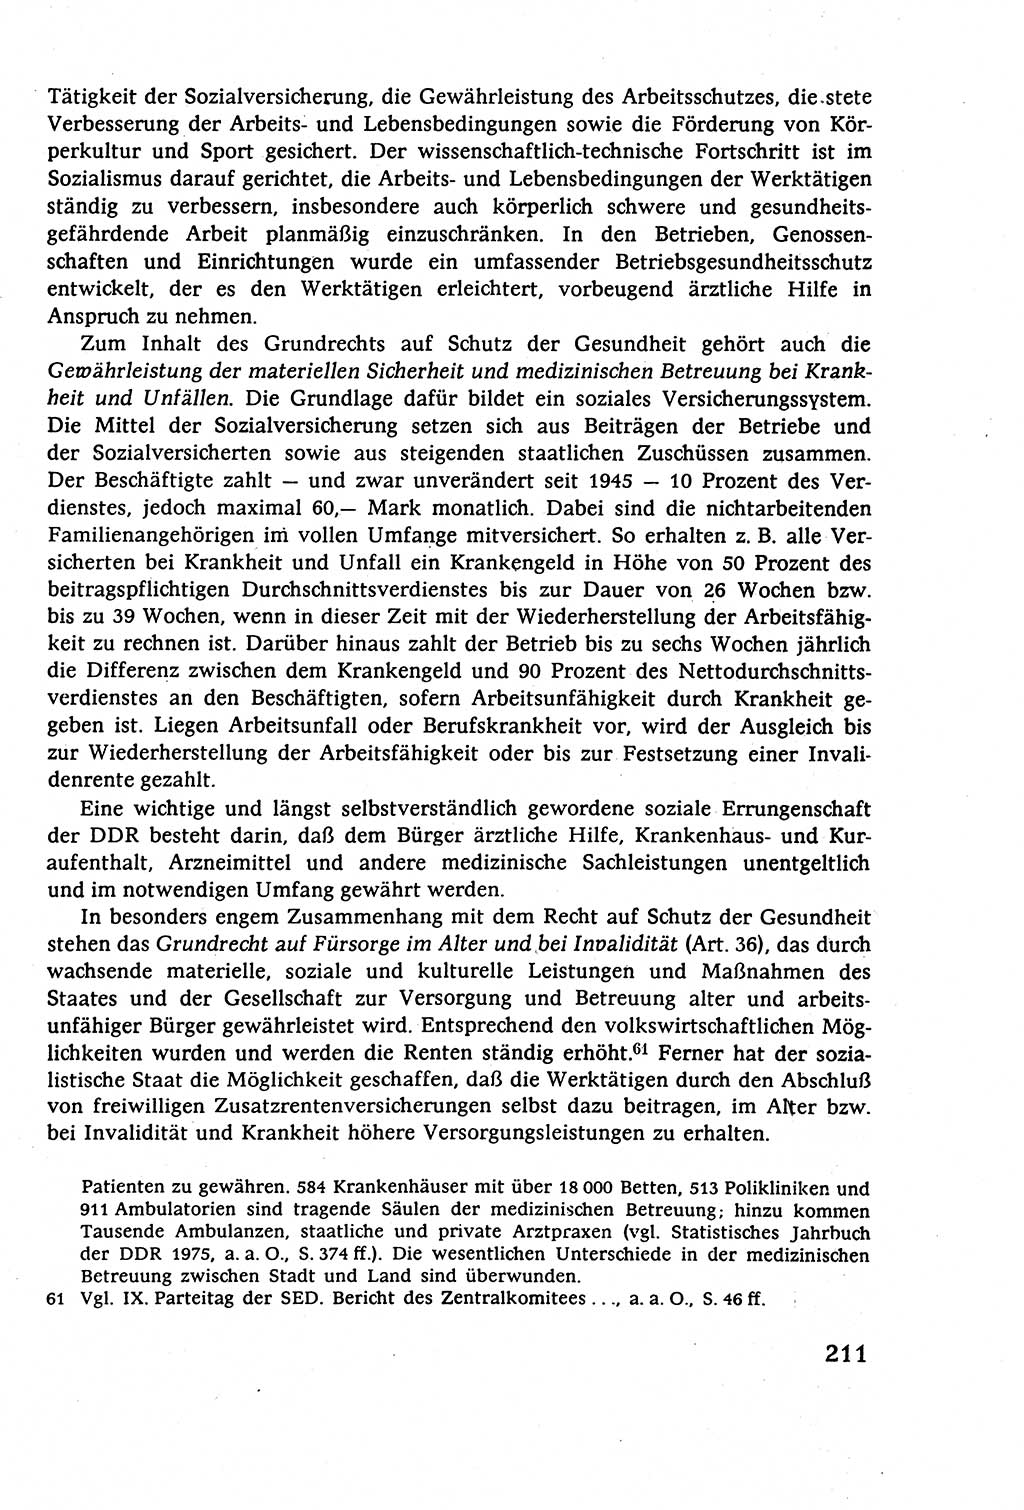 Staatsrecht der DDR (Deutsche Demokratische Republik), Lehrbuch 1977, Seite 211 (St.-R. DDR Lb. 1977, S. 211)